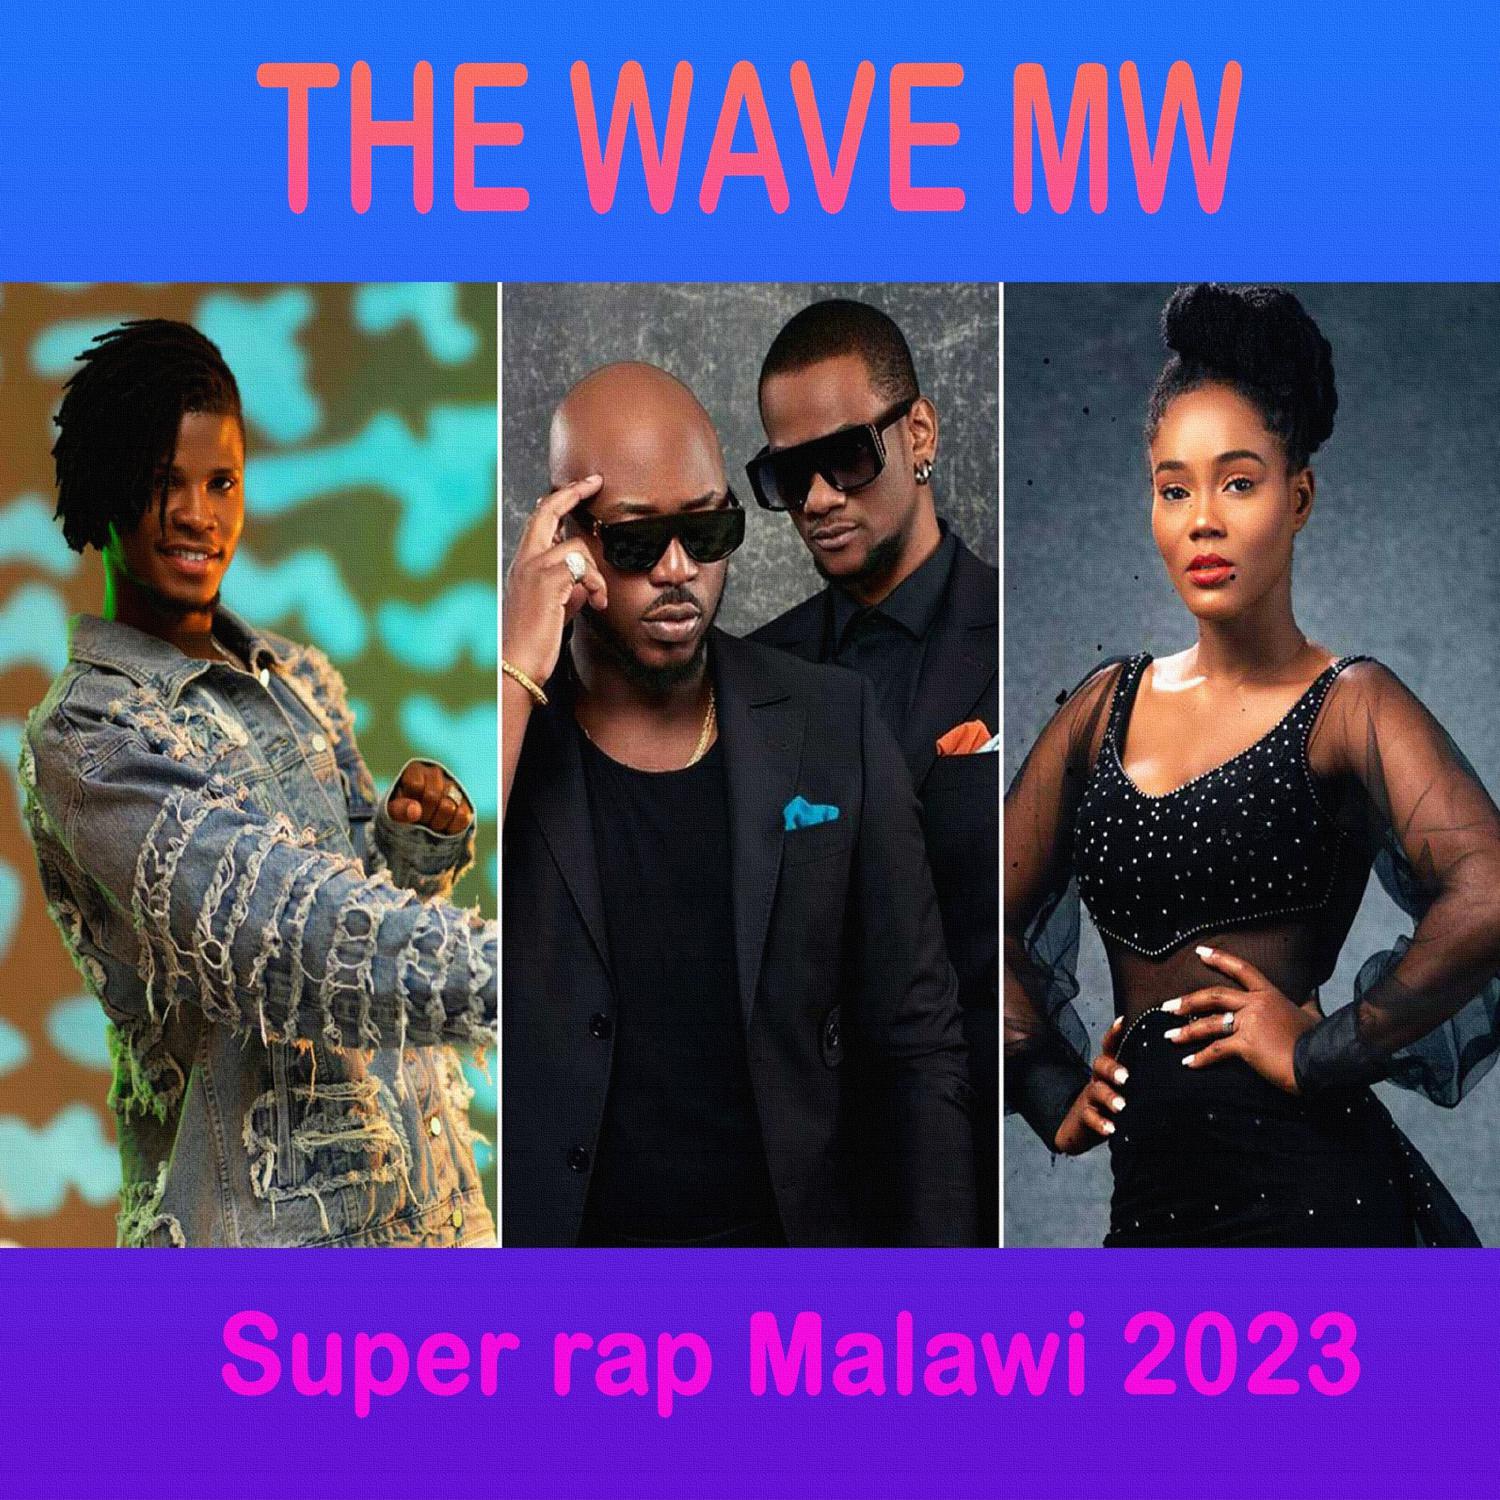 The Wave Mw - Hago Midinga